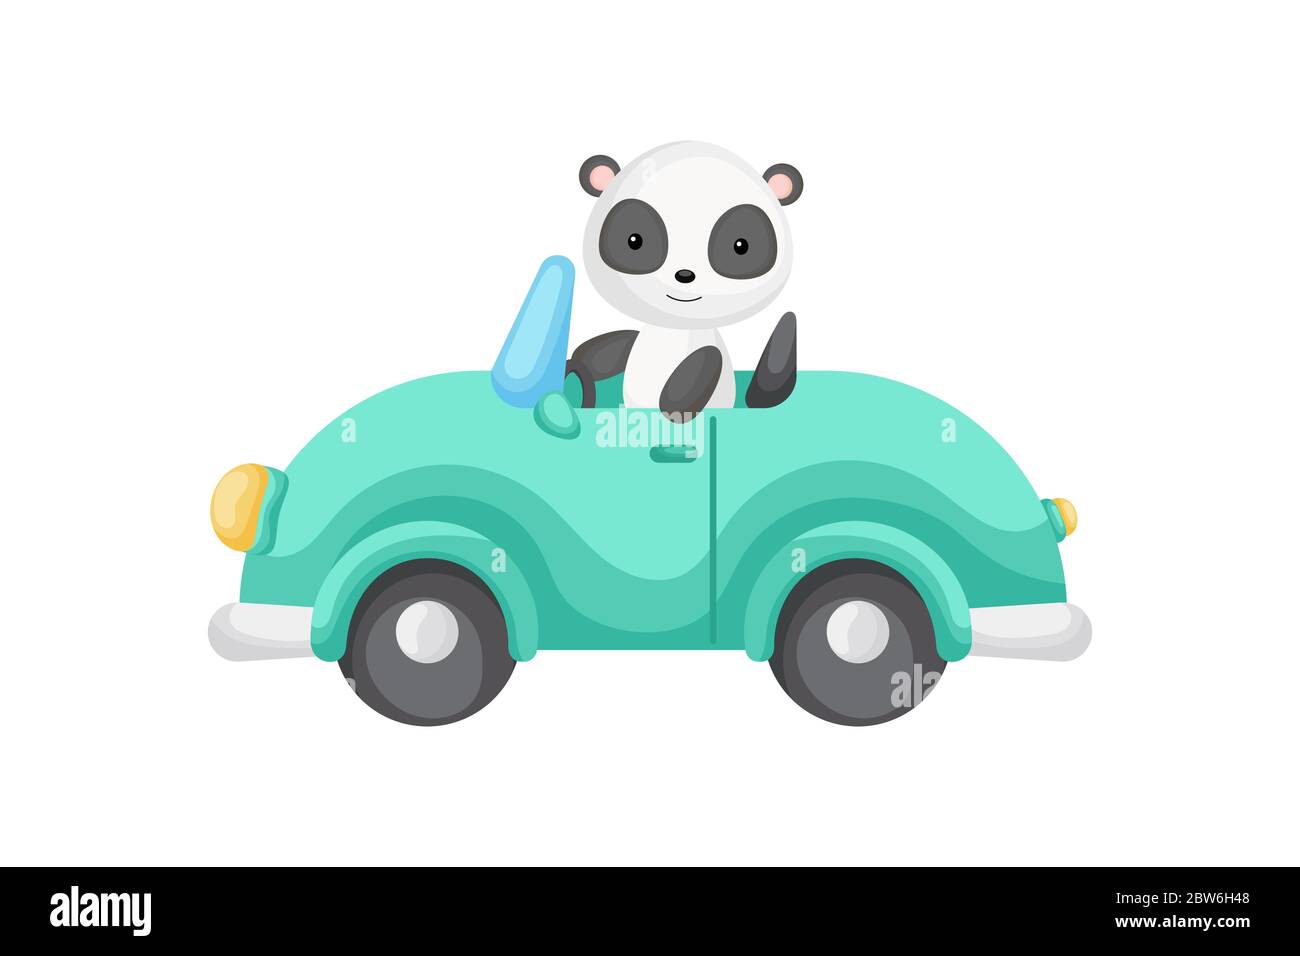 Niedlicher Panda Fahrer auf dem Auto. Grafikelement für Kinderbuch, Album, Scrapbook, Postkarte oder mobiles Spiel. Flache Vektordarstellung isoliert Stock Vektor